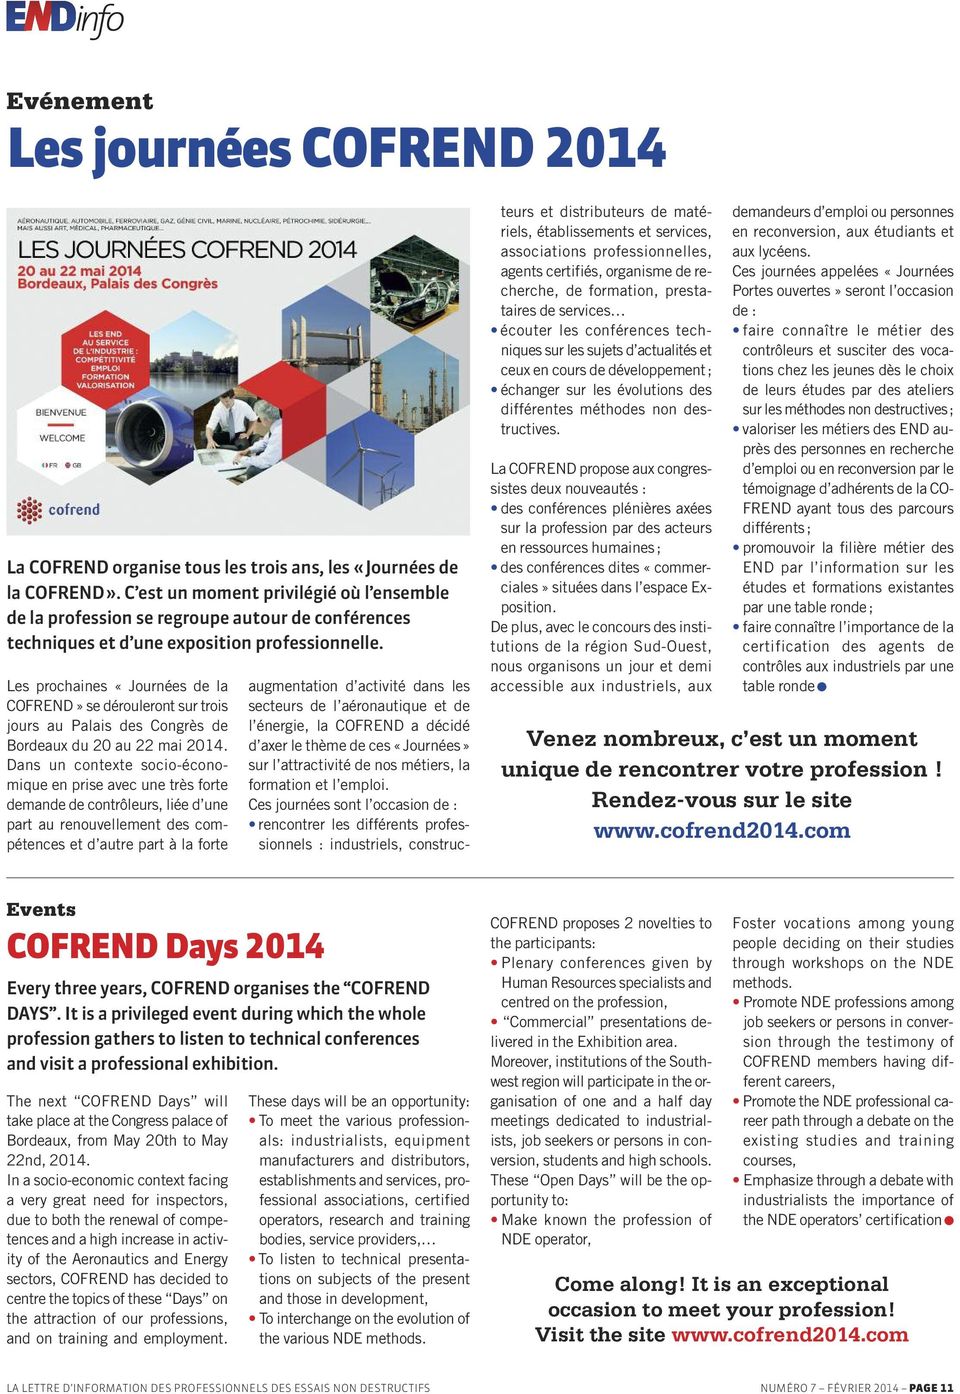 Les prochaines «Journées de la COFREND» se dérouleront sur trois jours au Palais des Congrès de Bordeaux du 20 au 22 mai 2014.